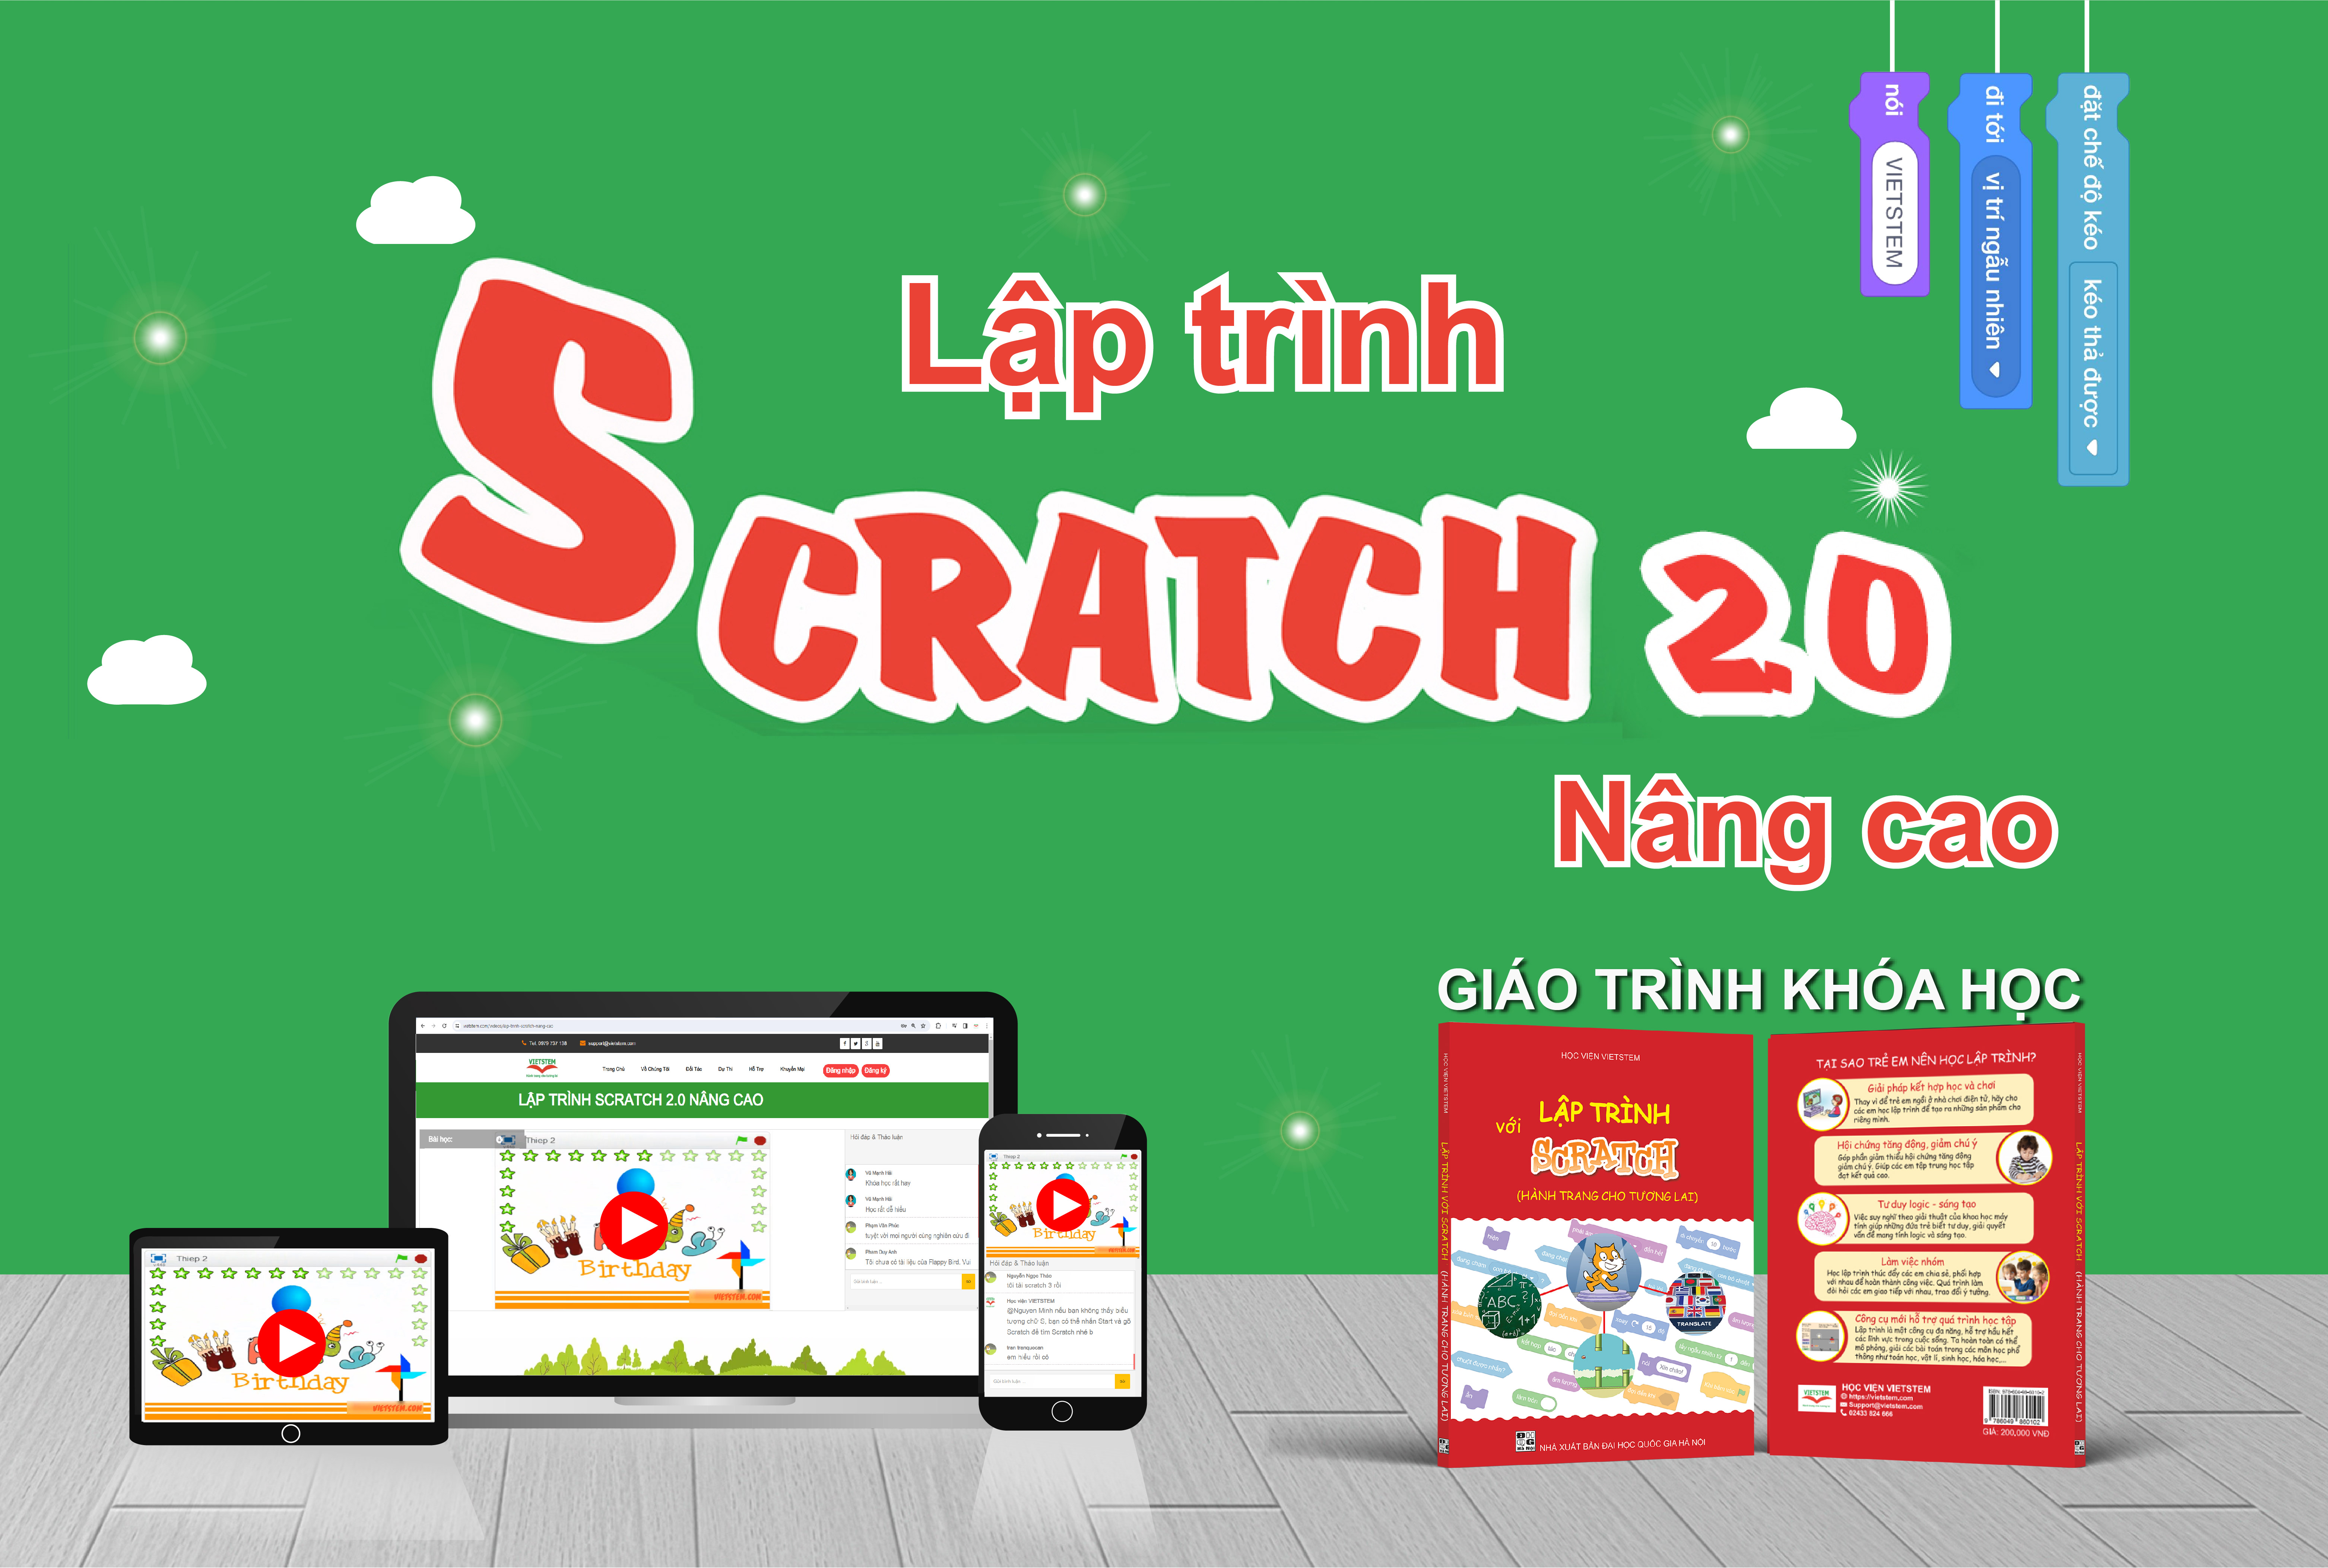 Lập trình Scratch 2.0 Nâng Cao